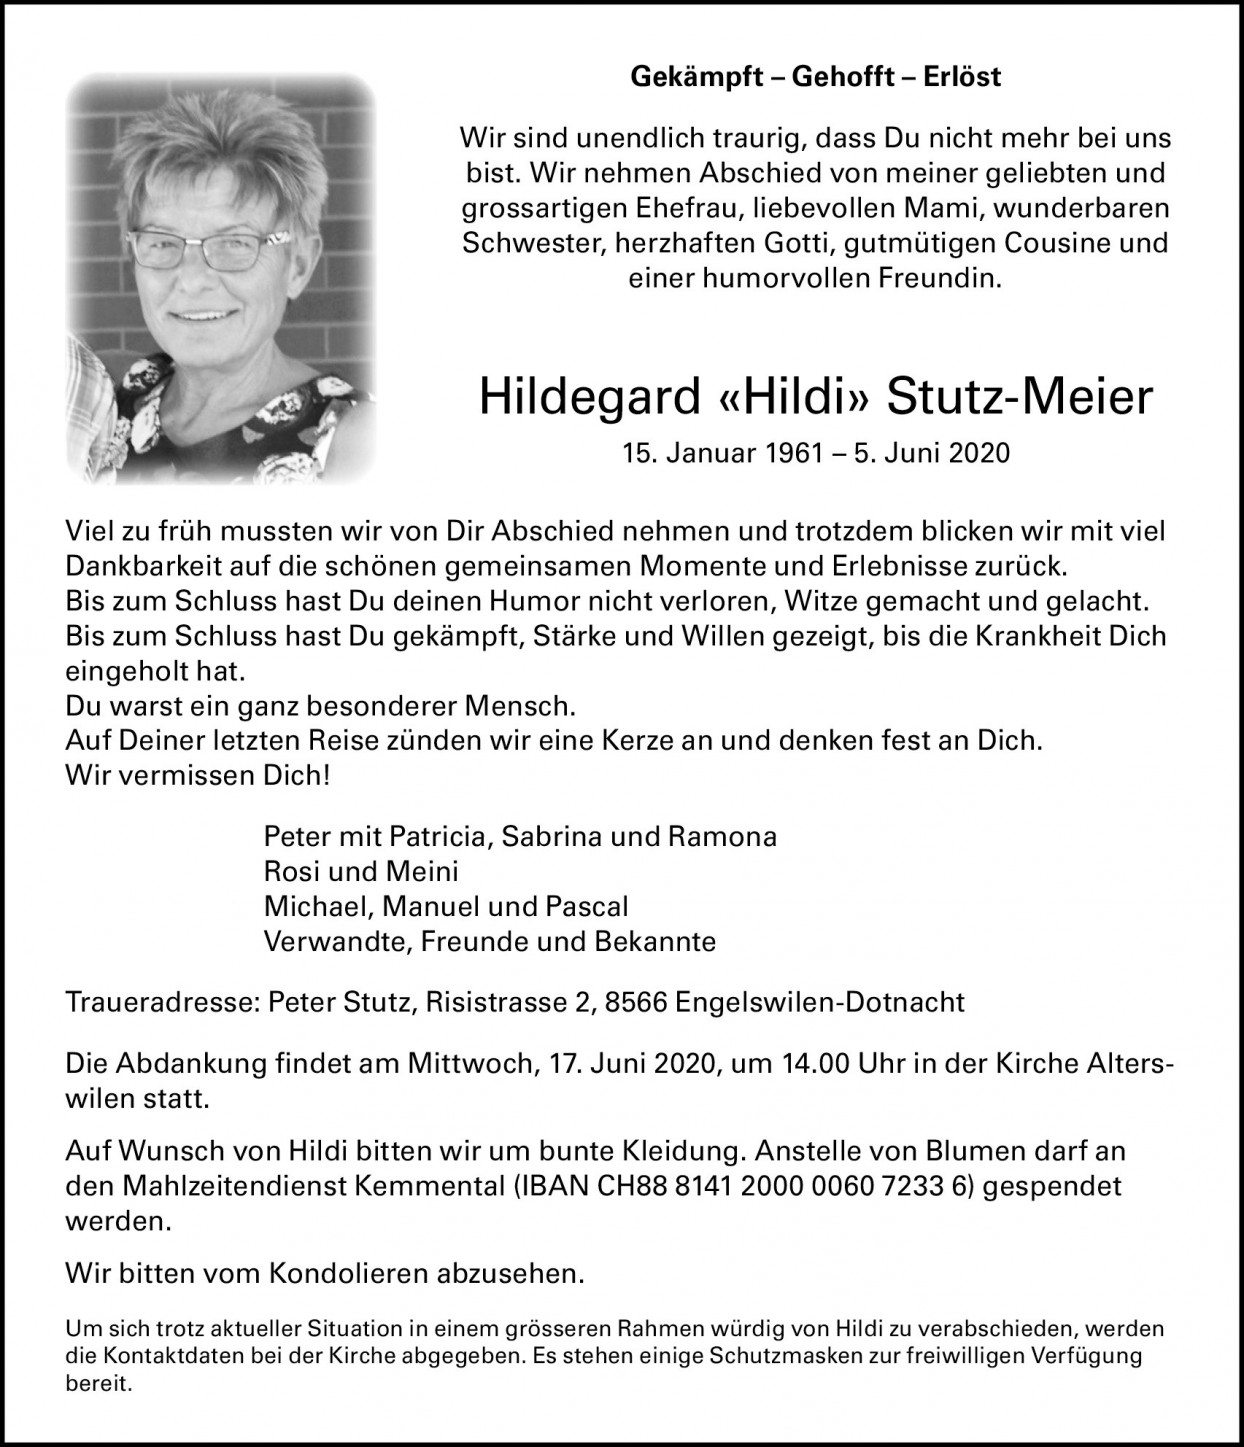 Hildegard Stutz-Meier